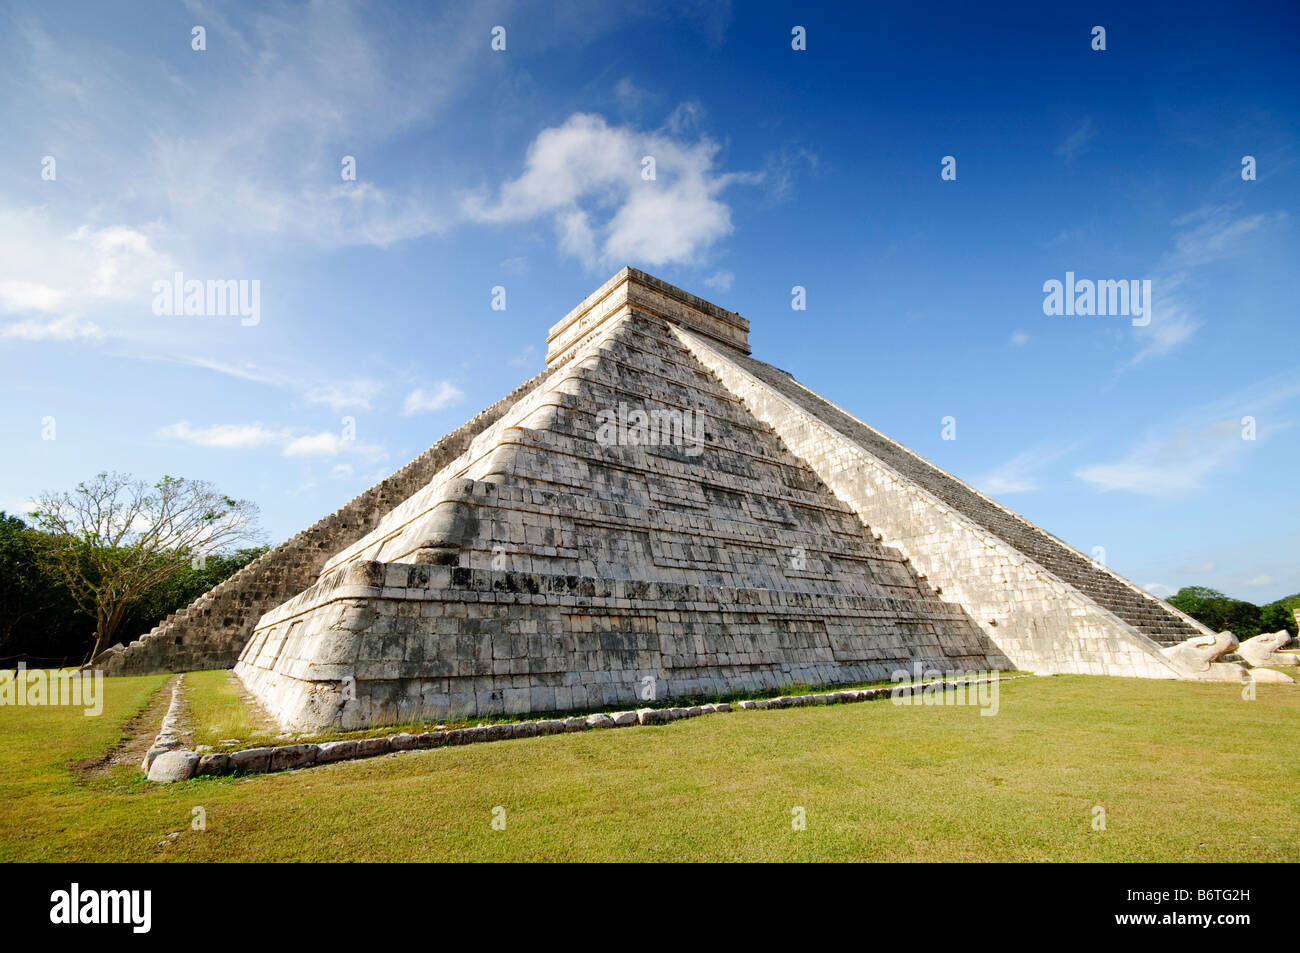 CHICHEN ITZA, Mexiko - El Castillo (auch bekannt als Tempel von Kuklcan) an den antiken Maya-Ruinen in Chichen Itza, Yucatan, Mexiko 081216093256 4443.NEF. Chichen Itza befindet sich auf der Yucatan-Halbinsel in Mexiko und ist eine bedeutende archäologische Stätte, die die reiche Geschichte und fortgeschrittene wissenschaftliche Kenntnisse der alten Maya-Zivilisation zeigt. Sie ist vor allem bekannt für die Kukulkan Pyramide, oder „El Castillo“, eine vierseitige Struktur mit 91 Stufen auf jeder Seite, die in einem einzigen Schritt auf der Spitze gipfelt, um die 365 Tage des Sonnenjahres zu repräsentieren. Stockfoto